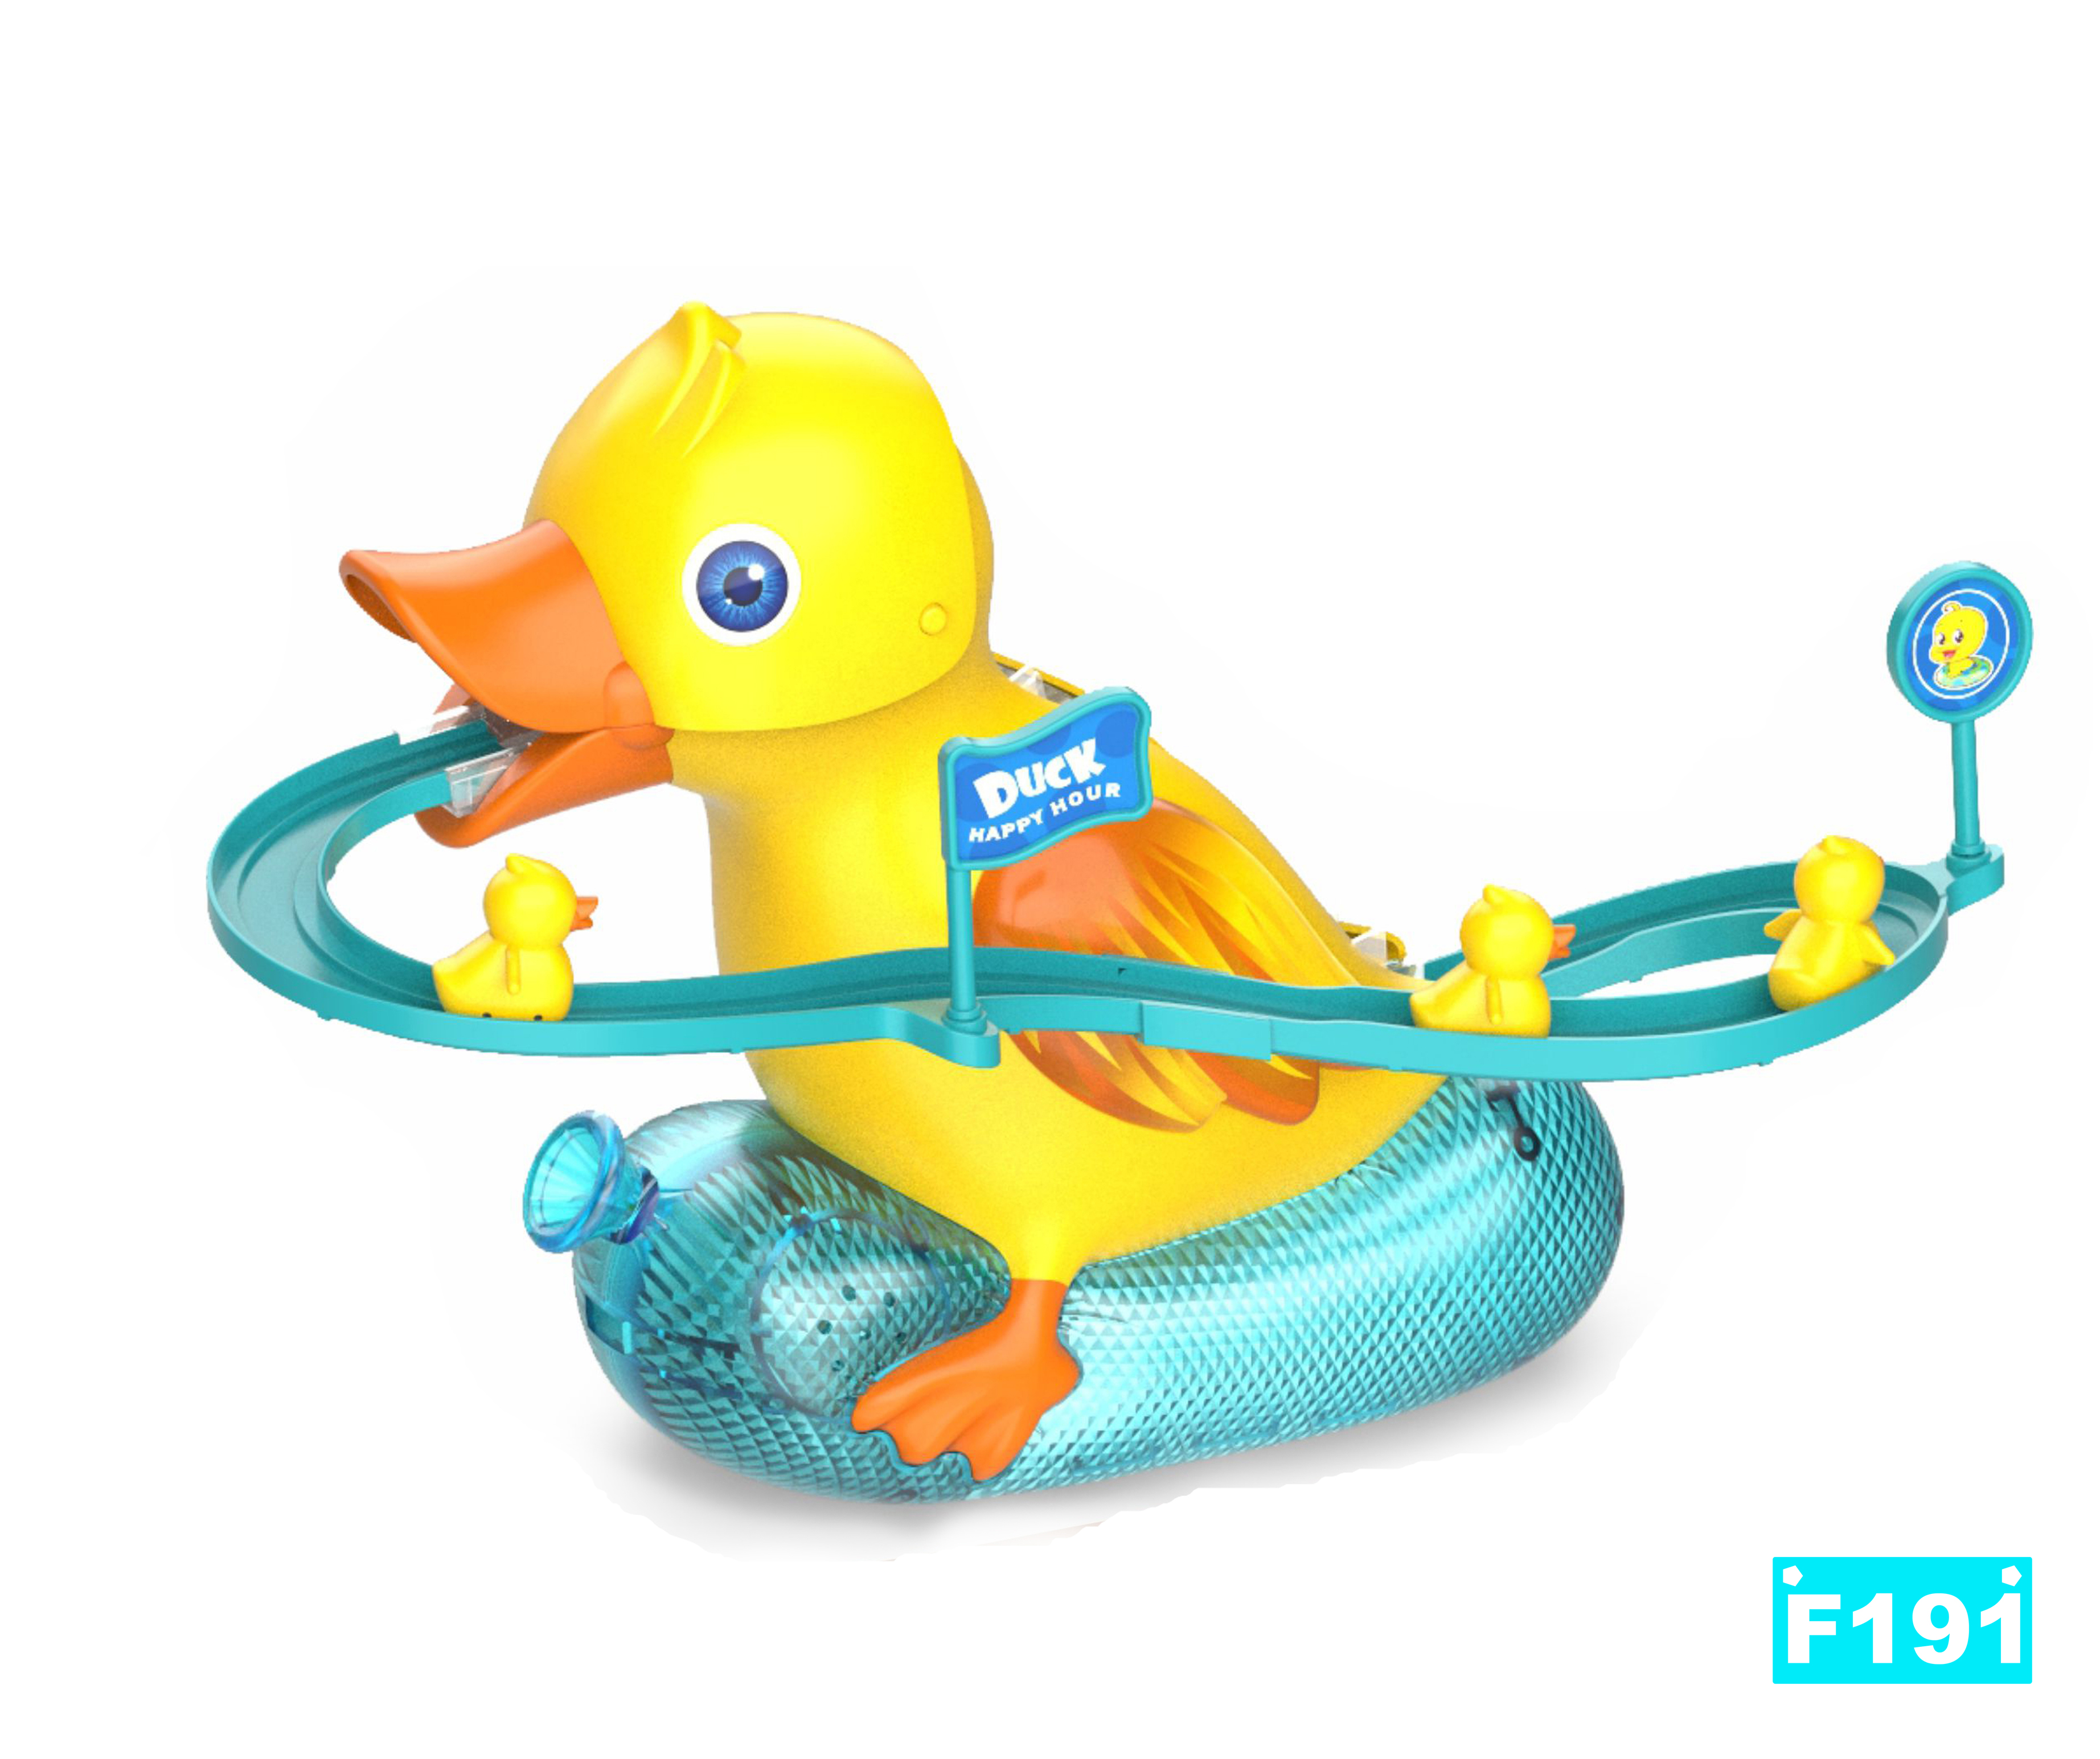 小鸭子爬楼梯 鸭子滑梯轨道玩具 外贸玩具 电动玩具 智能玩具 TOYS 小黄鸭玩具 JUGUETE白底实物图